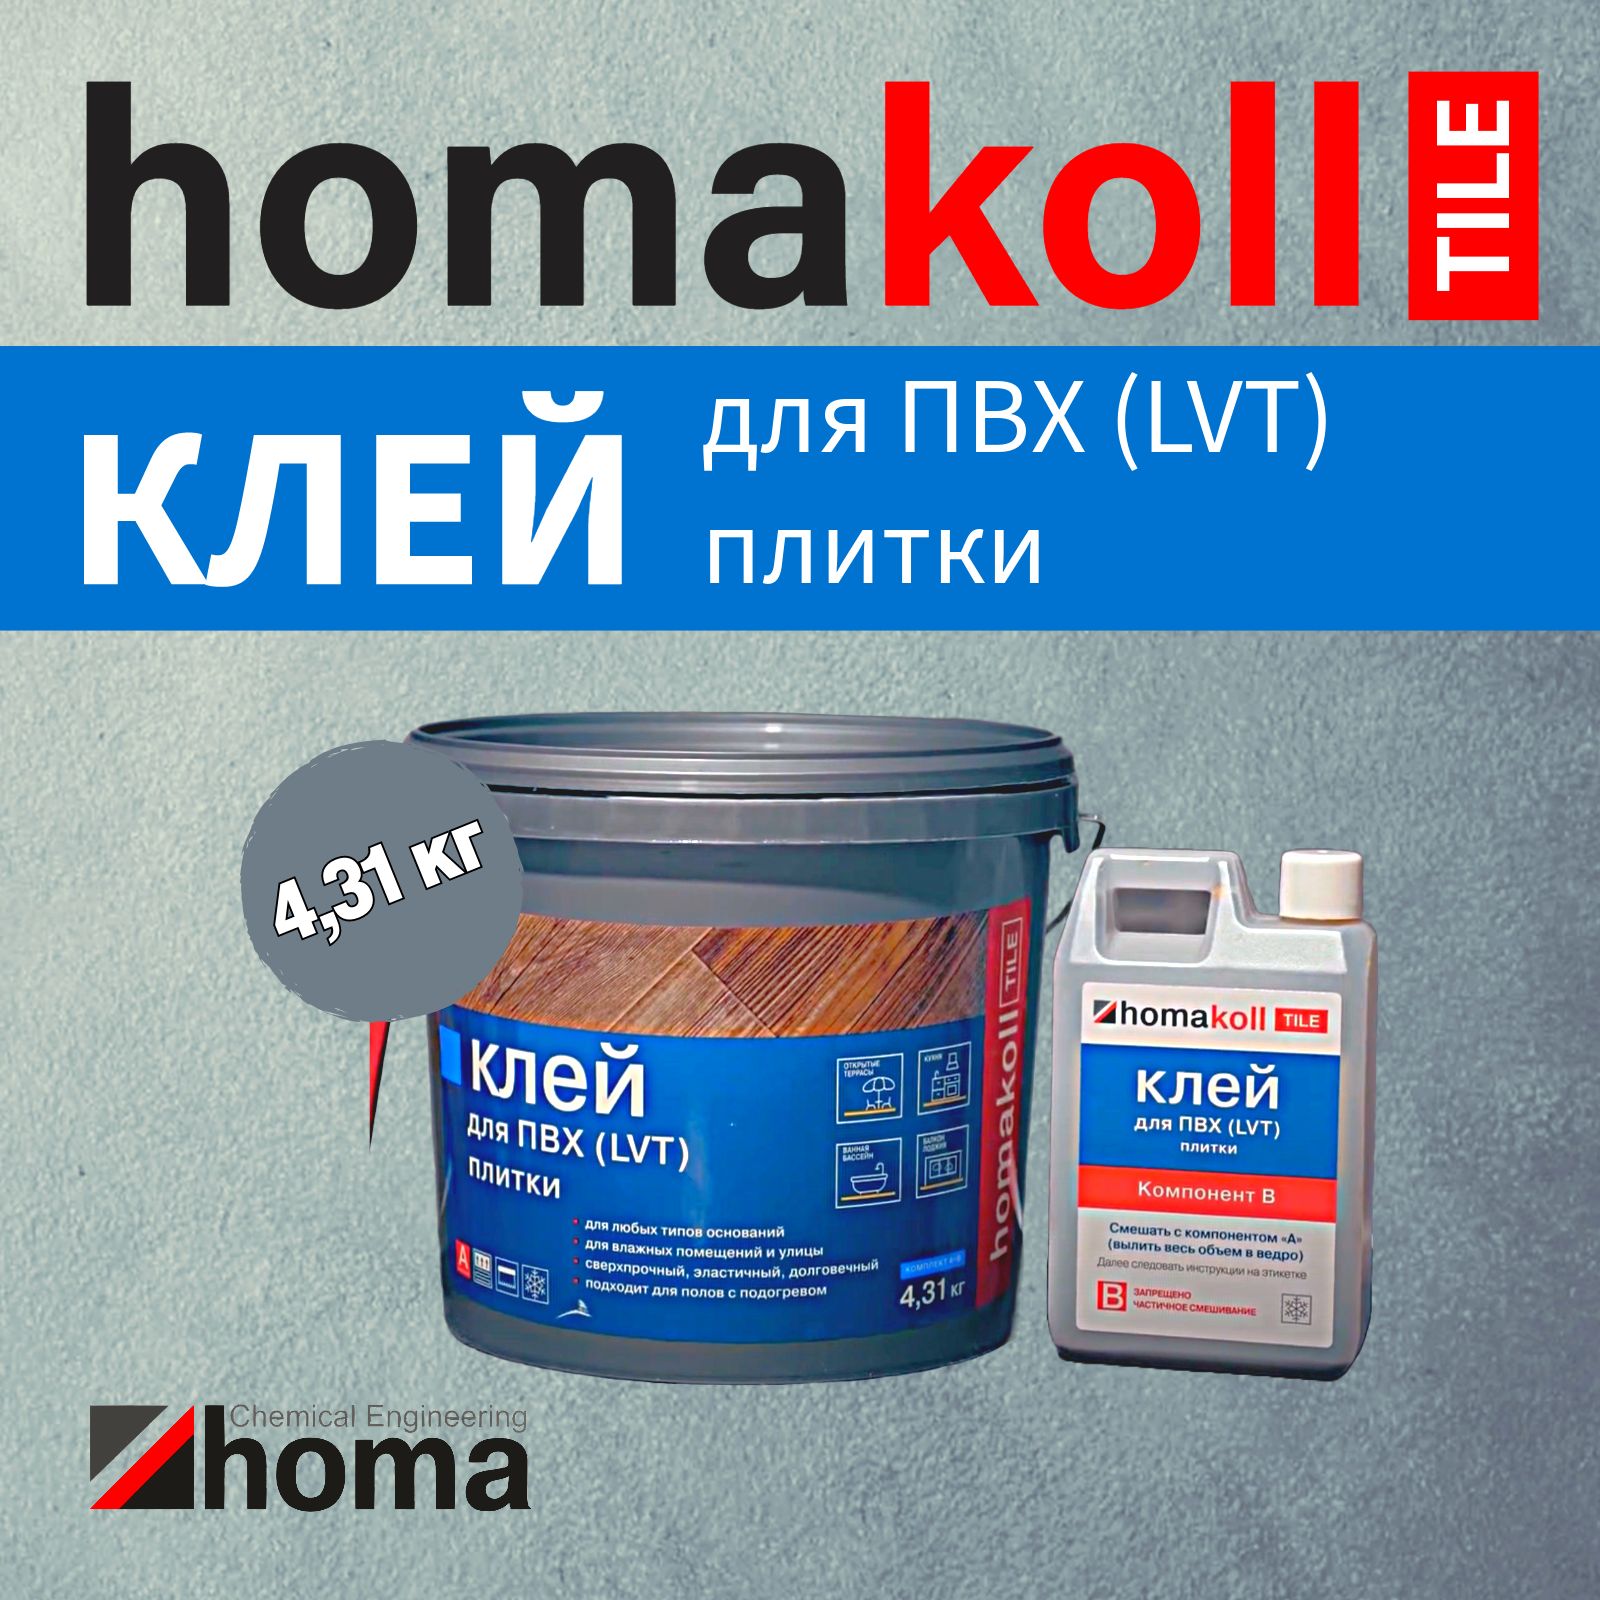 Клей homakoll TILE для напольных модульных ПВХ-покрытий, 4,31 кг клей homakoll tile для напольных модульных пвх покрытий 4 31 кг